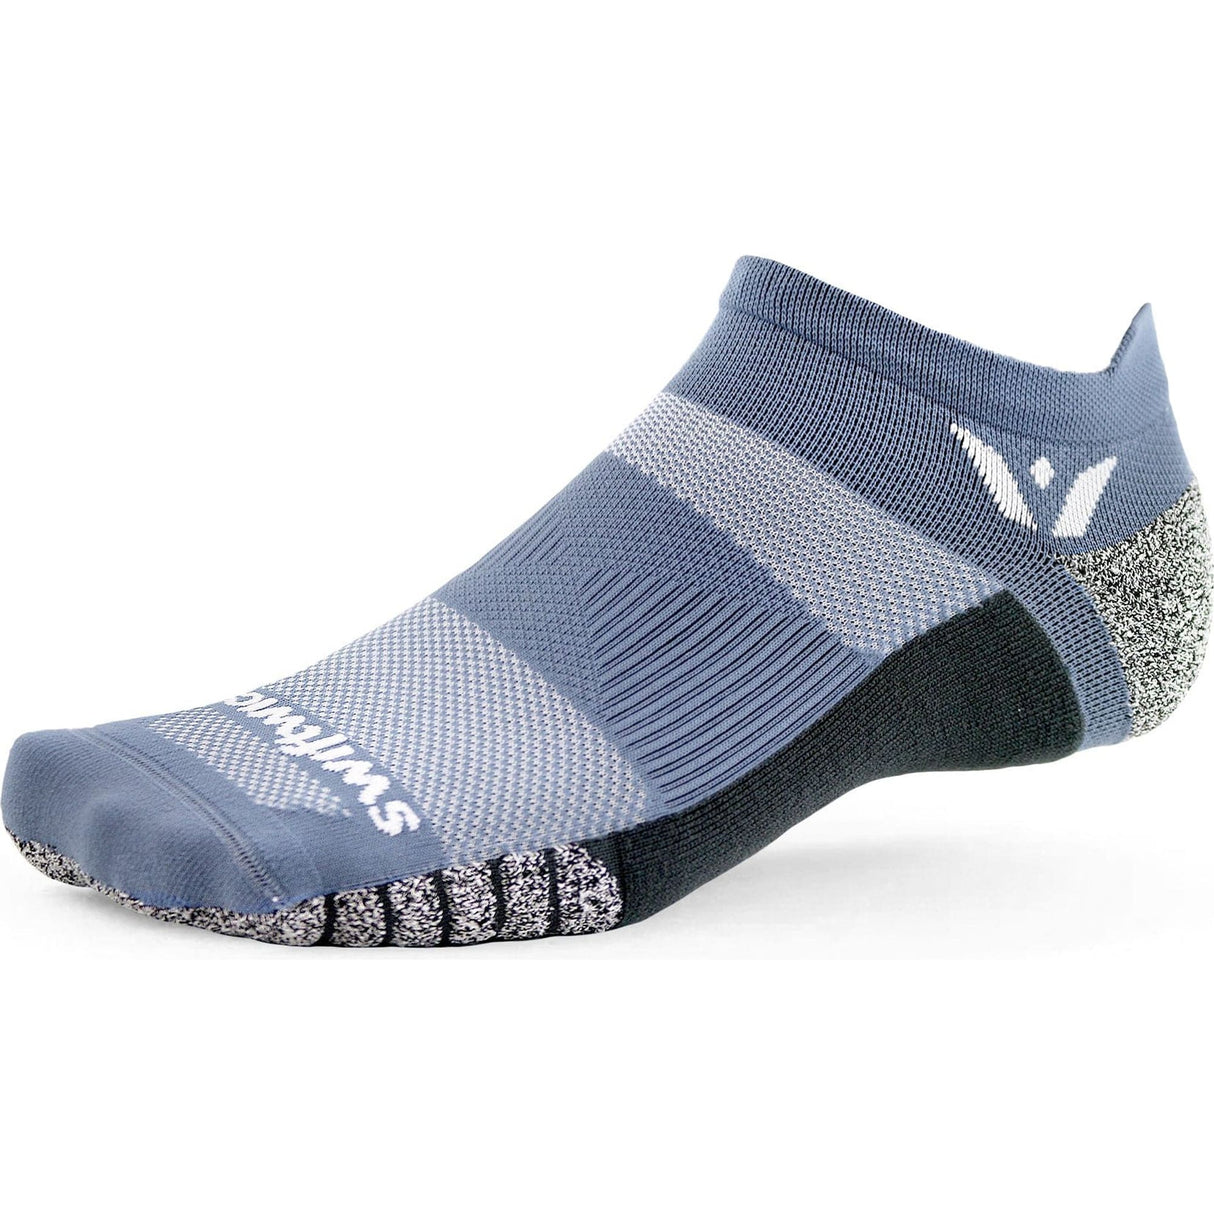 Swiftwick Flite XT Zero Tab Socks  -  Small / Blue Smoke